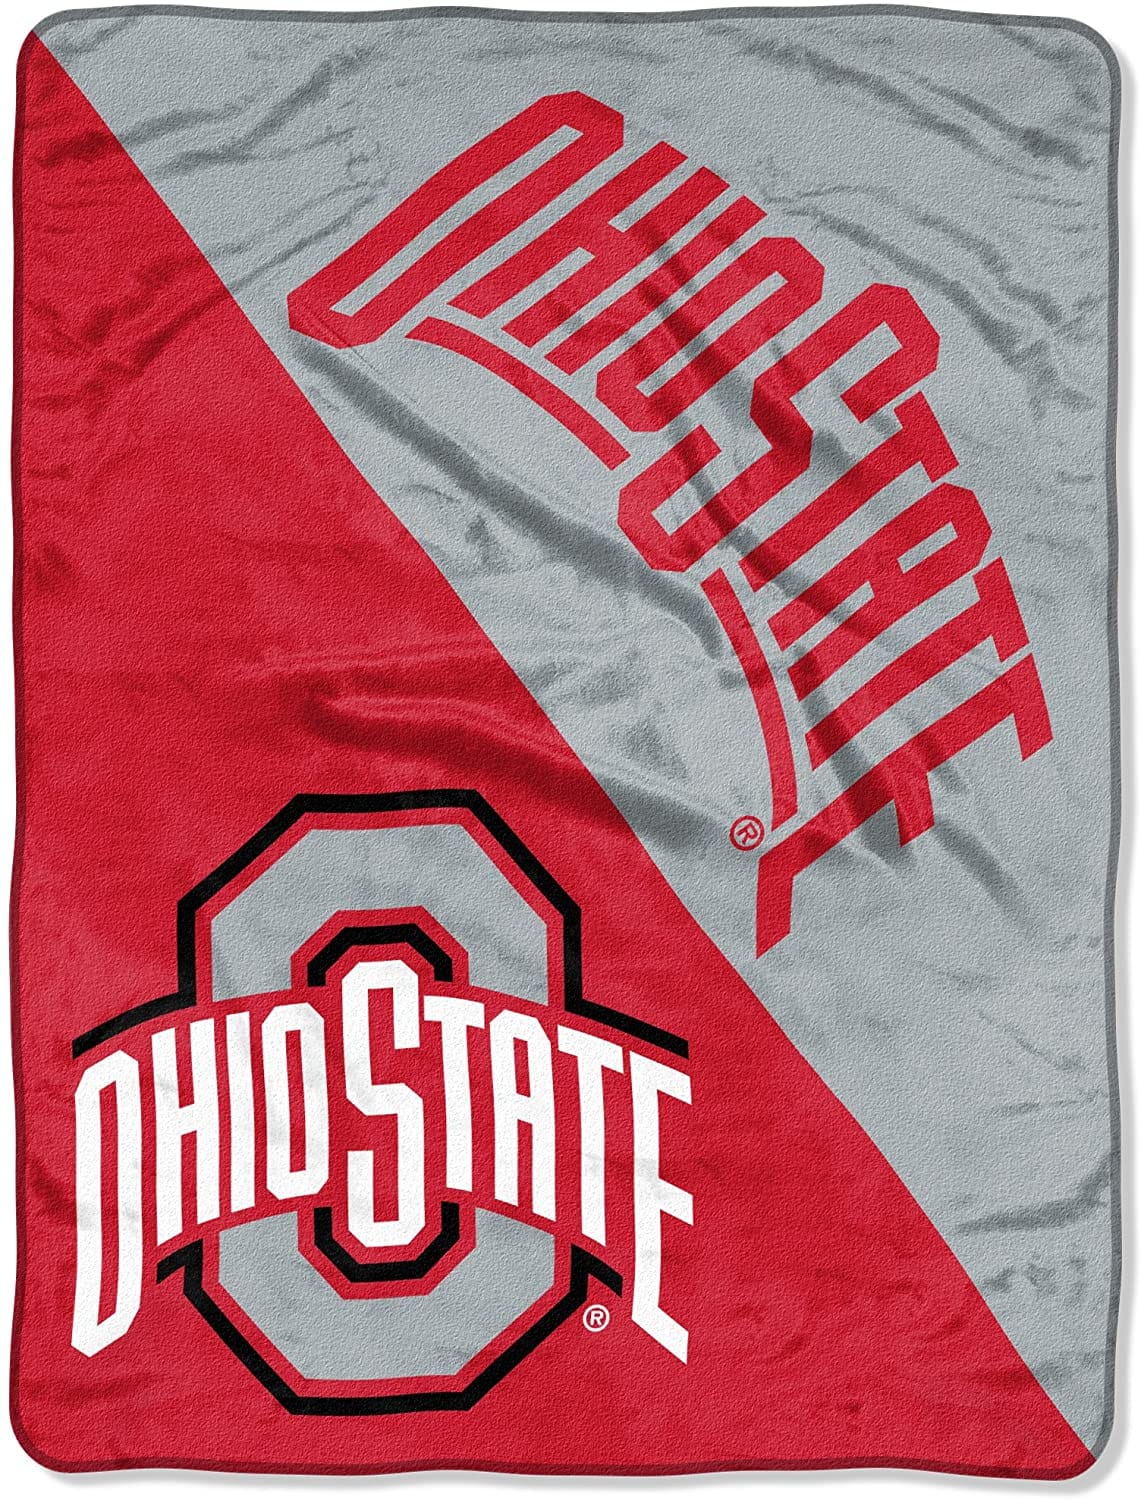 Ncaa Ohio State Buckeyes Fleece Blanket